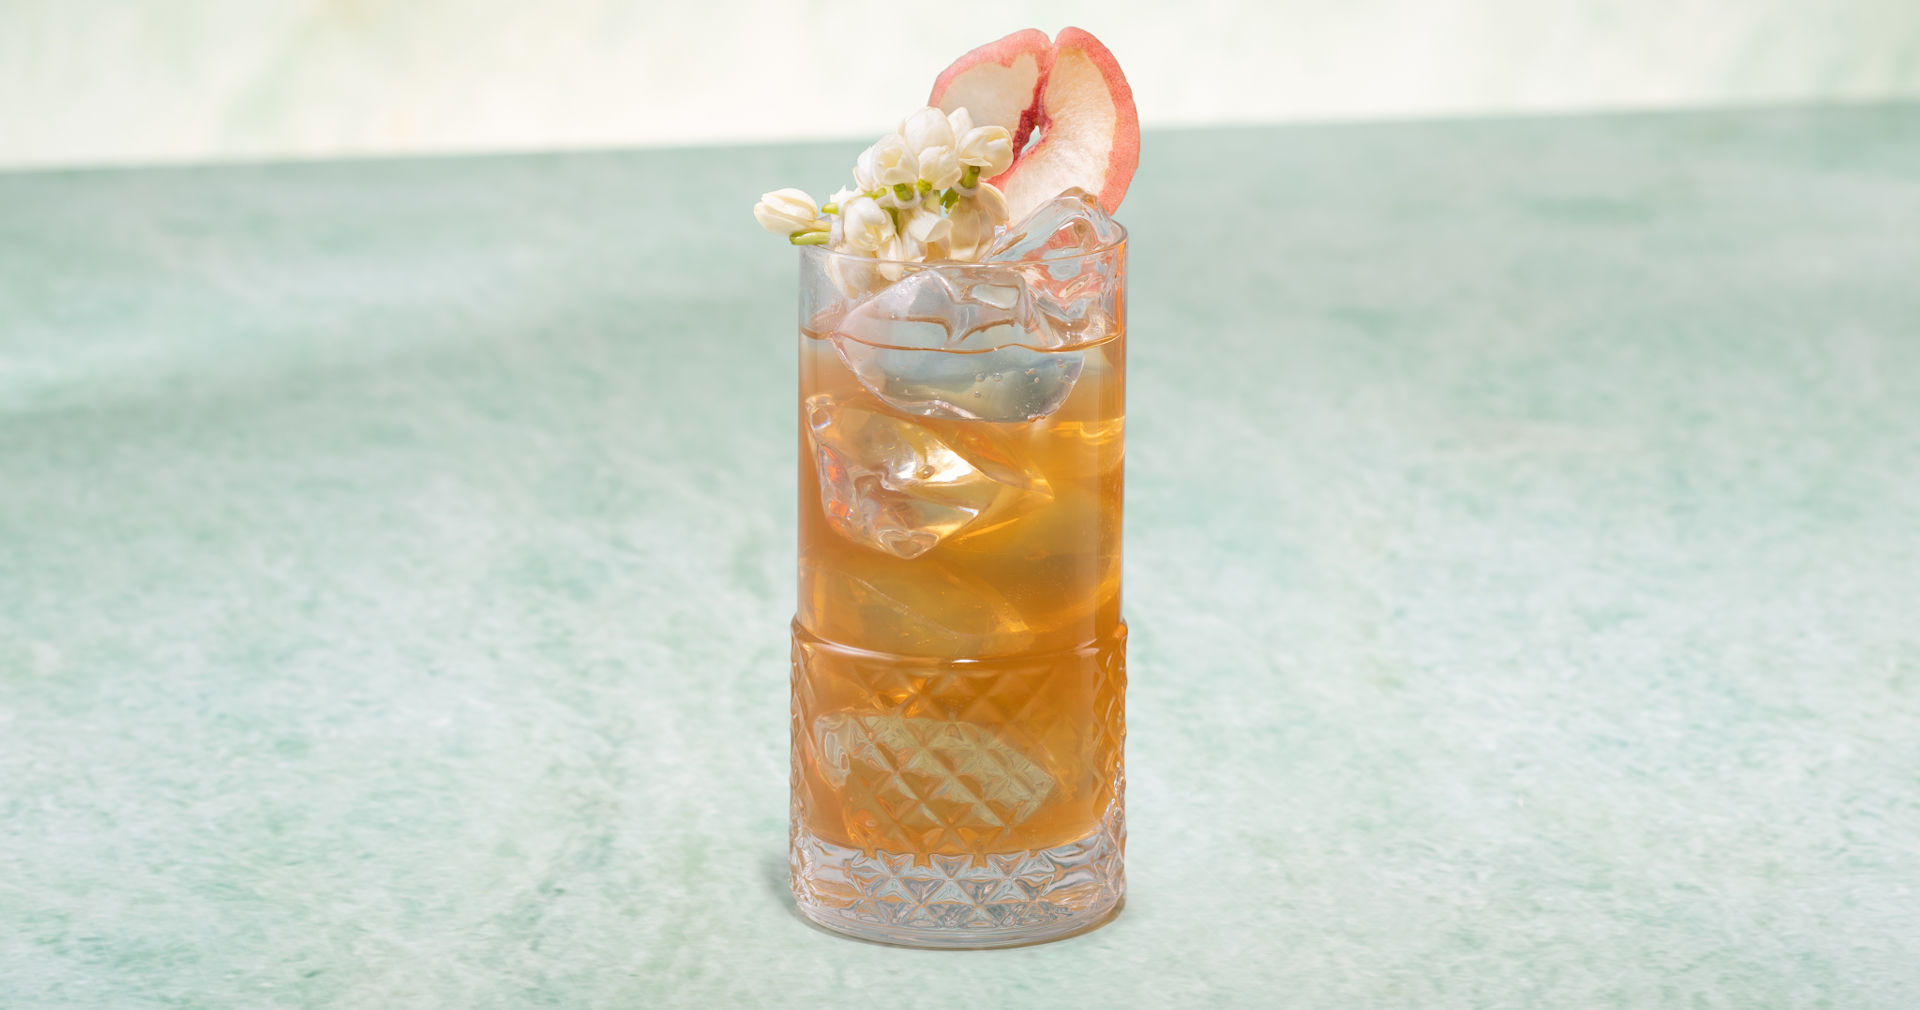 Glass of Peach & Jasmine Iced Tea on a green stone surface